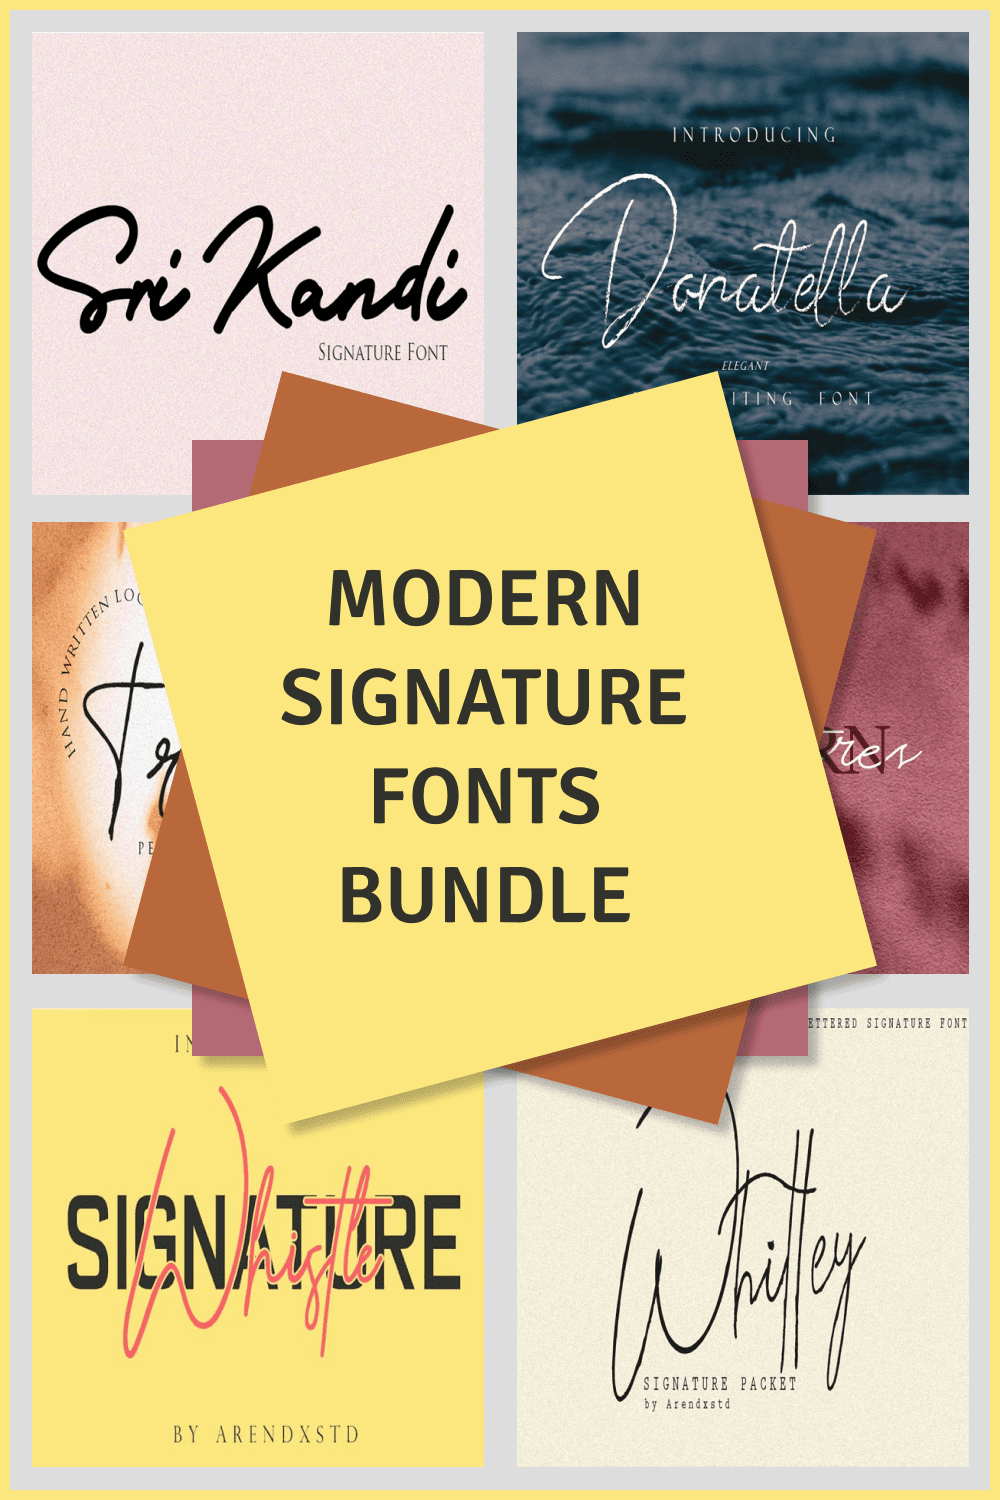 Modern Signature Fonts Bundle Pinterest preview.